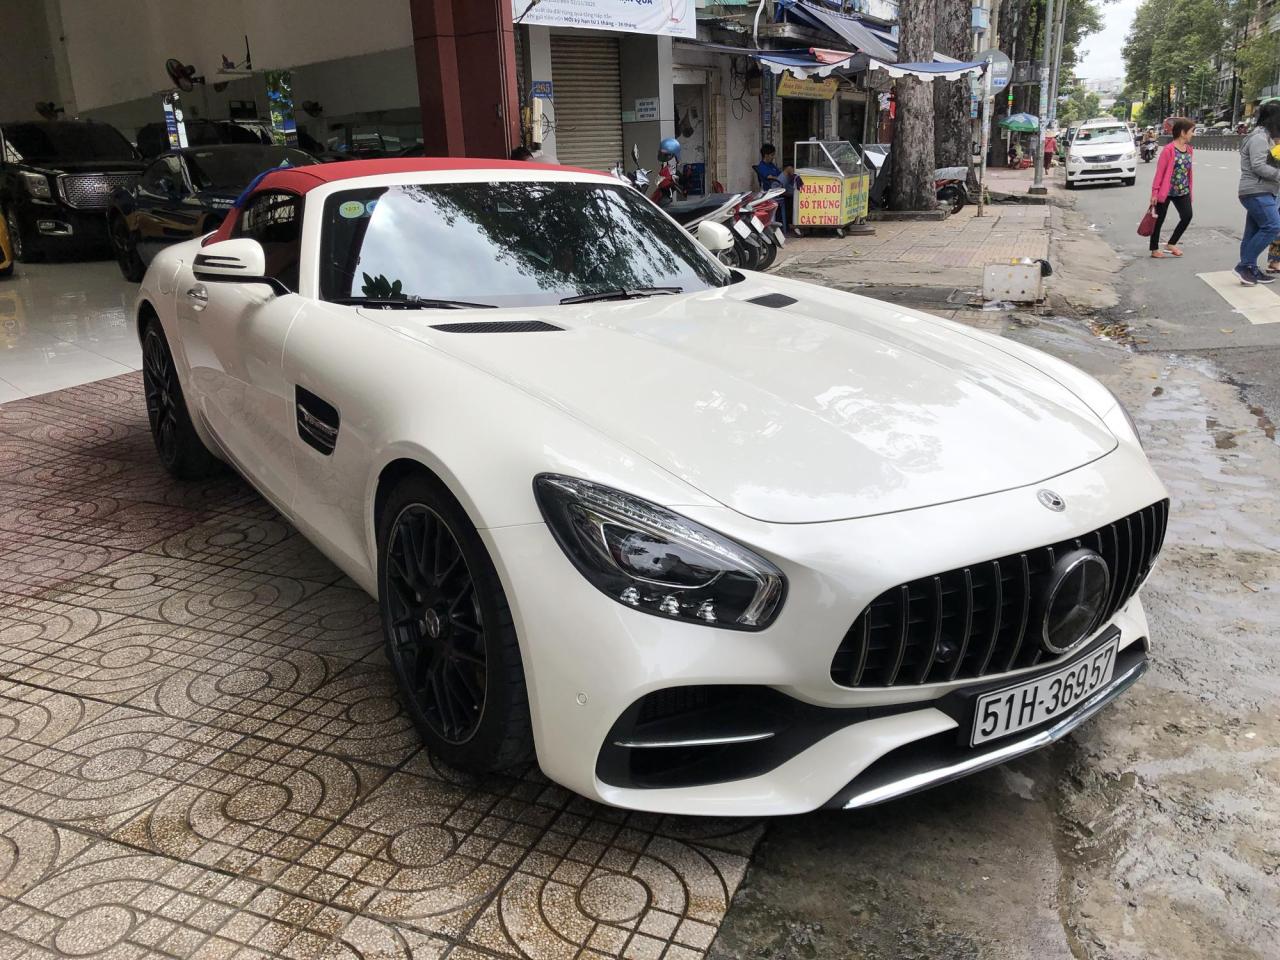 Về tay chủ mới, Mercedes-AMG GT Roadster độc nhất Việt Nam chính thức sở  hữu biển số Sài Gòn